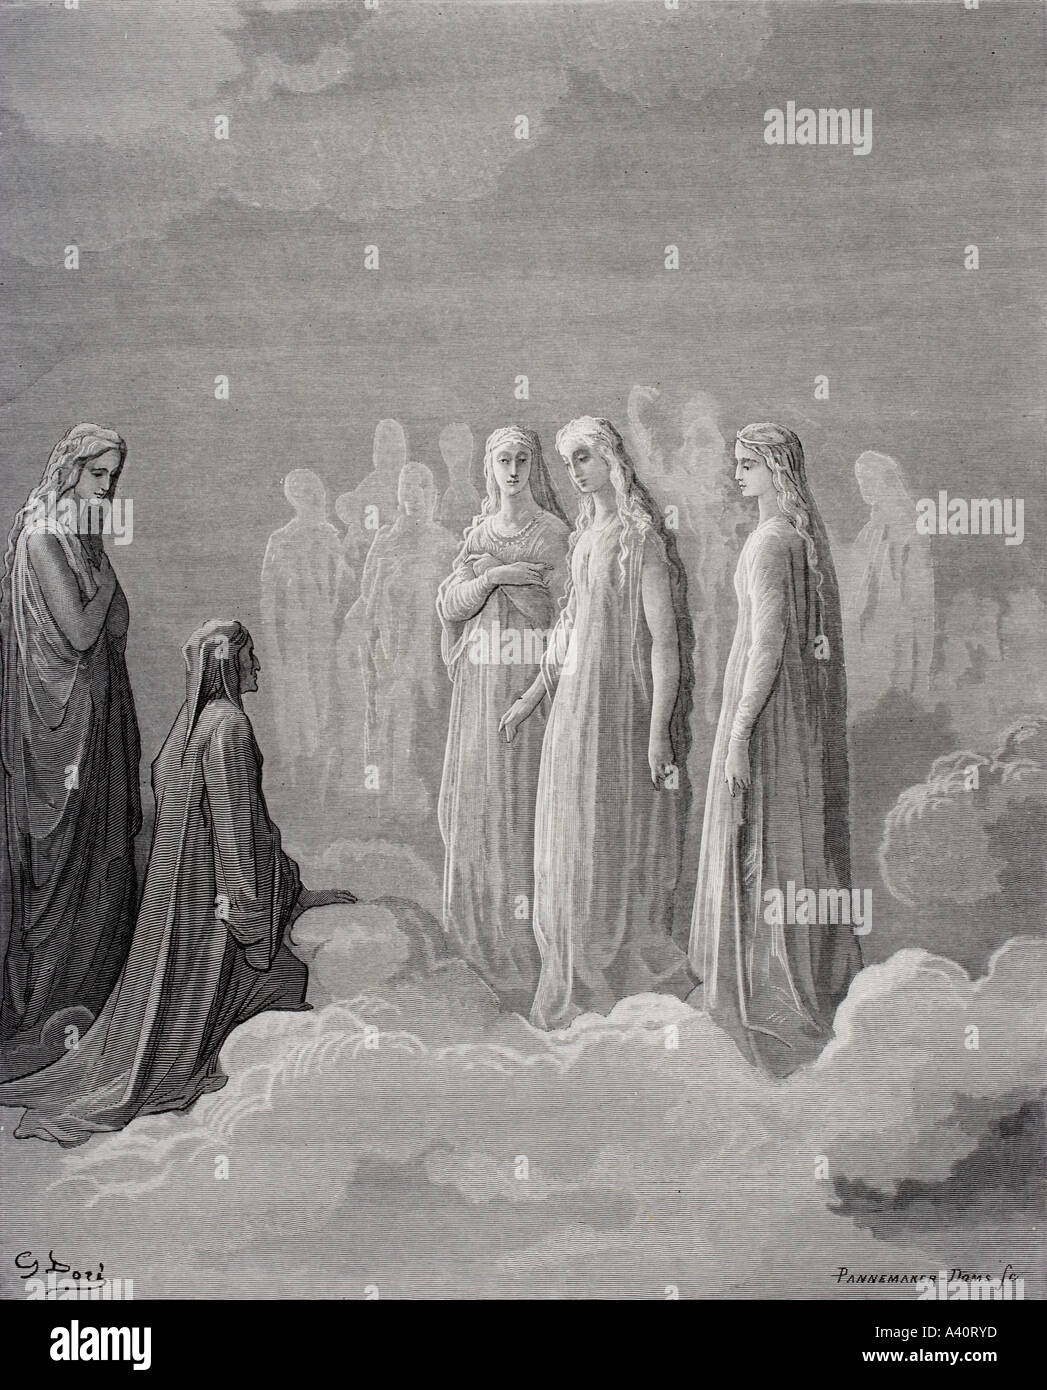 Abbildung für Paradiso Dante Alighieri. Canto-III-Linien 14 und 15, von Gustave Dore, 1832-1883. Französische Künstler und Illustrator. Stockfoto